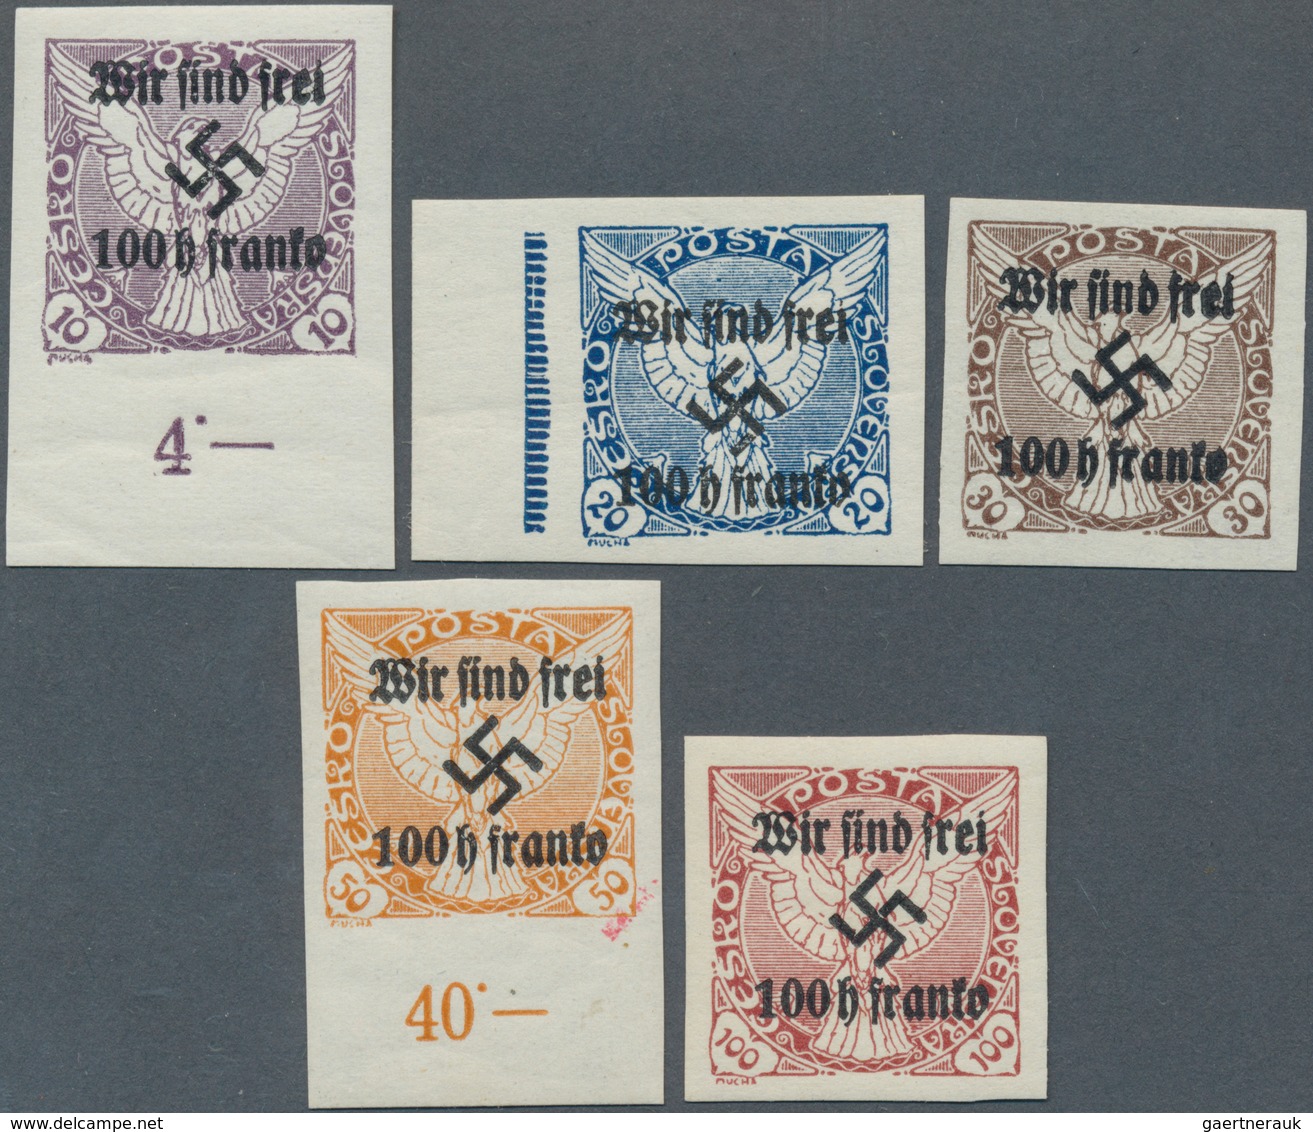 Sudetenland - Rumburg: 1938, Zeitungsmarken Mit Buchdruck-Aufdrucken "Wir Sind Frei!" Und Postfrisch - Région Des Sudètes